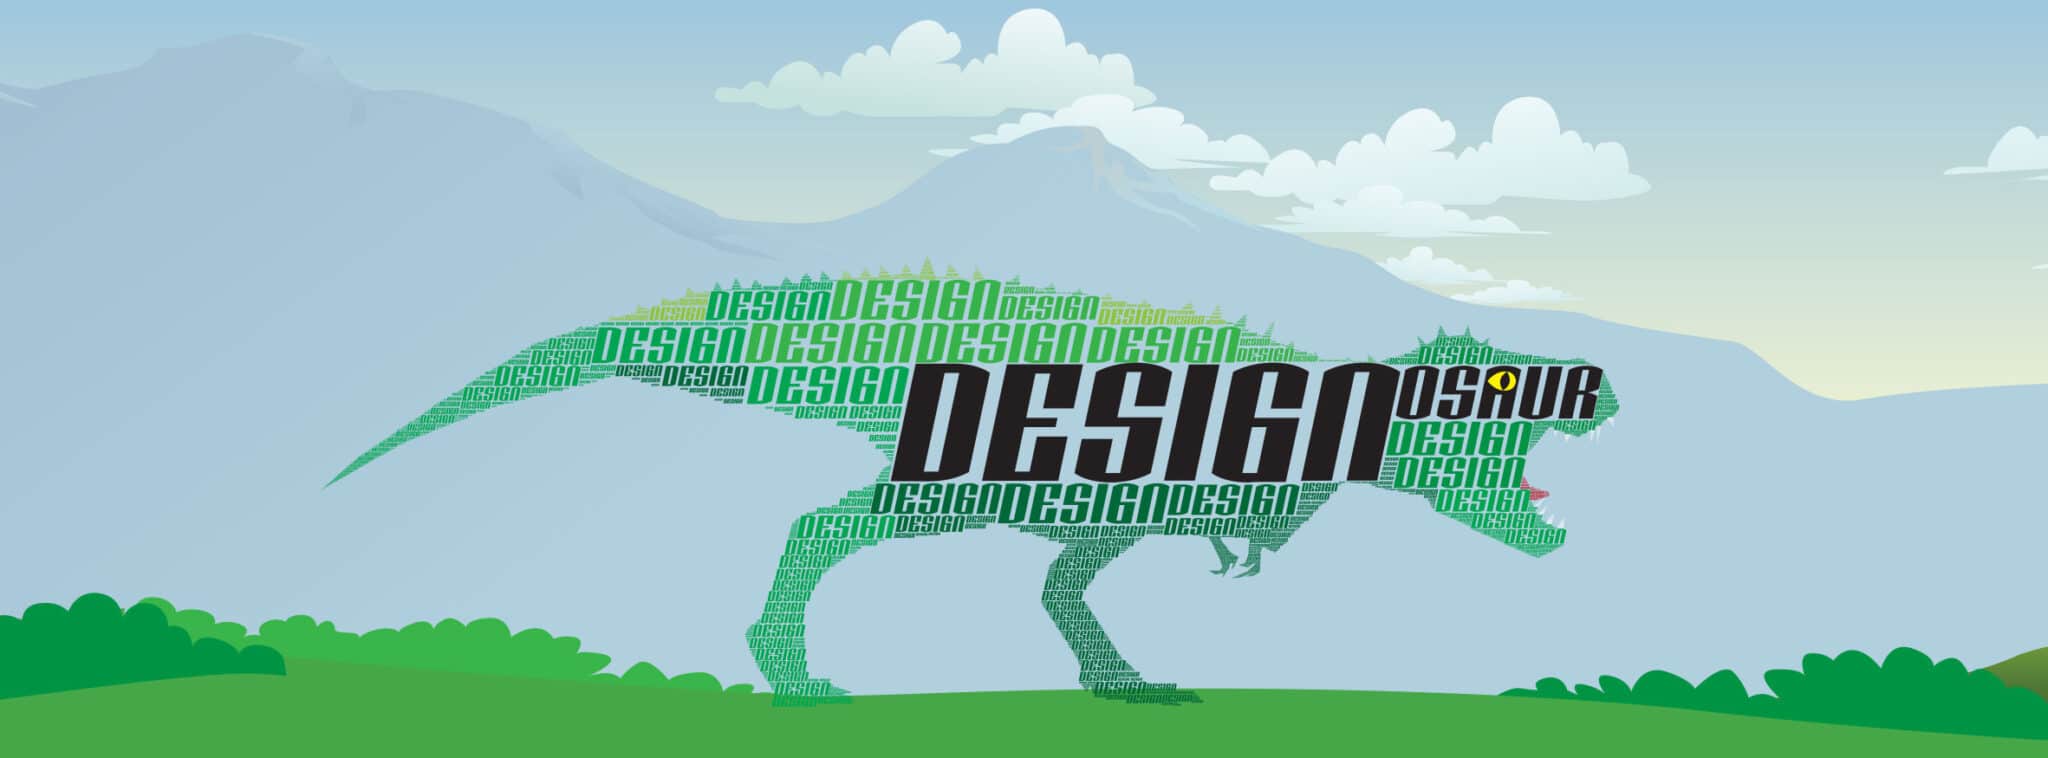 Designosaur Logo With Bg Website 2021